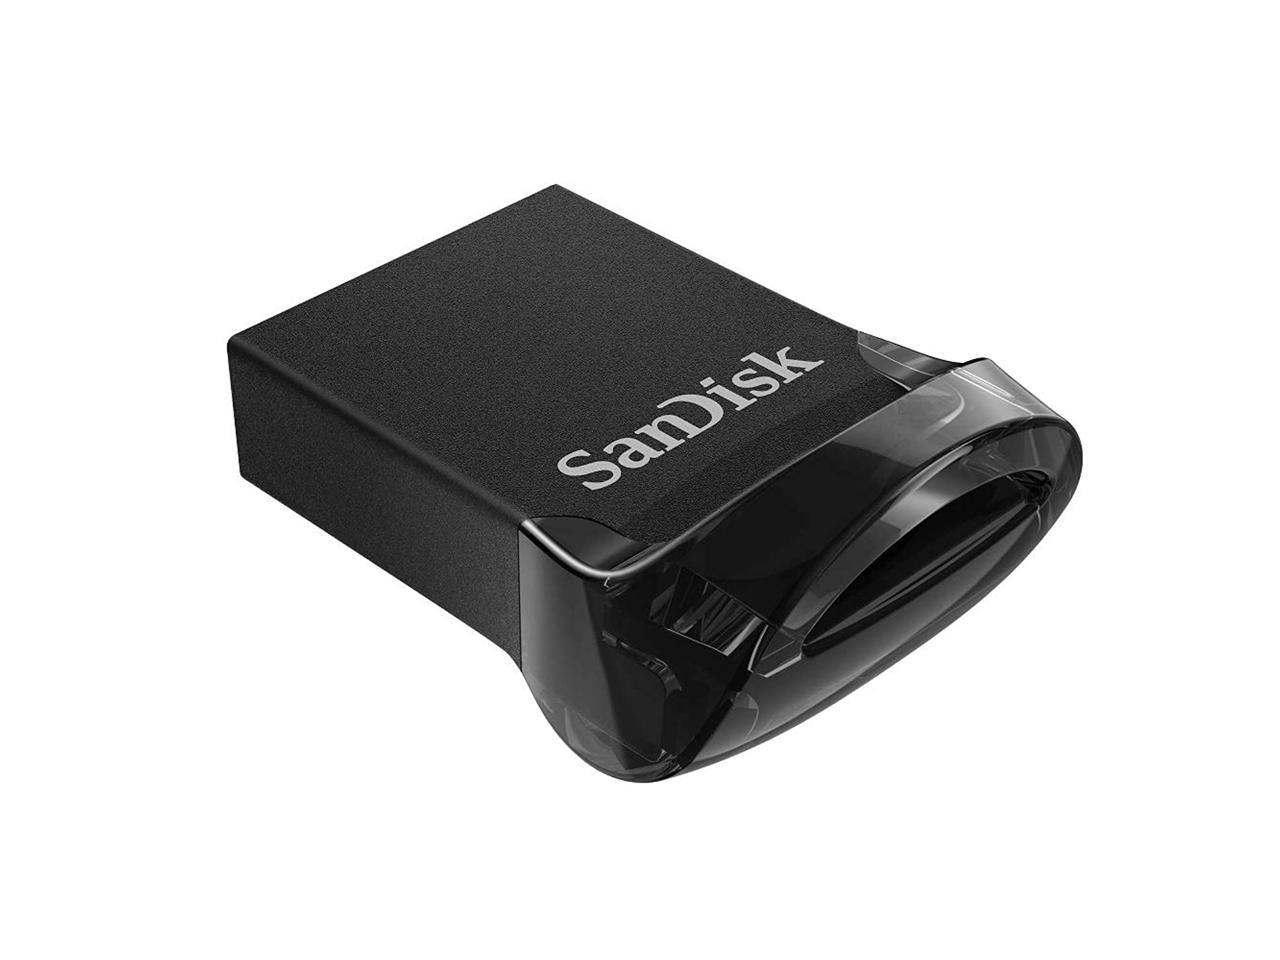 SanDisk USB 3.1 128 GB Ultra Fit CZ430 USB Flash Drive New ct 